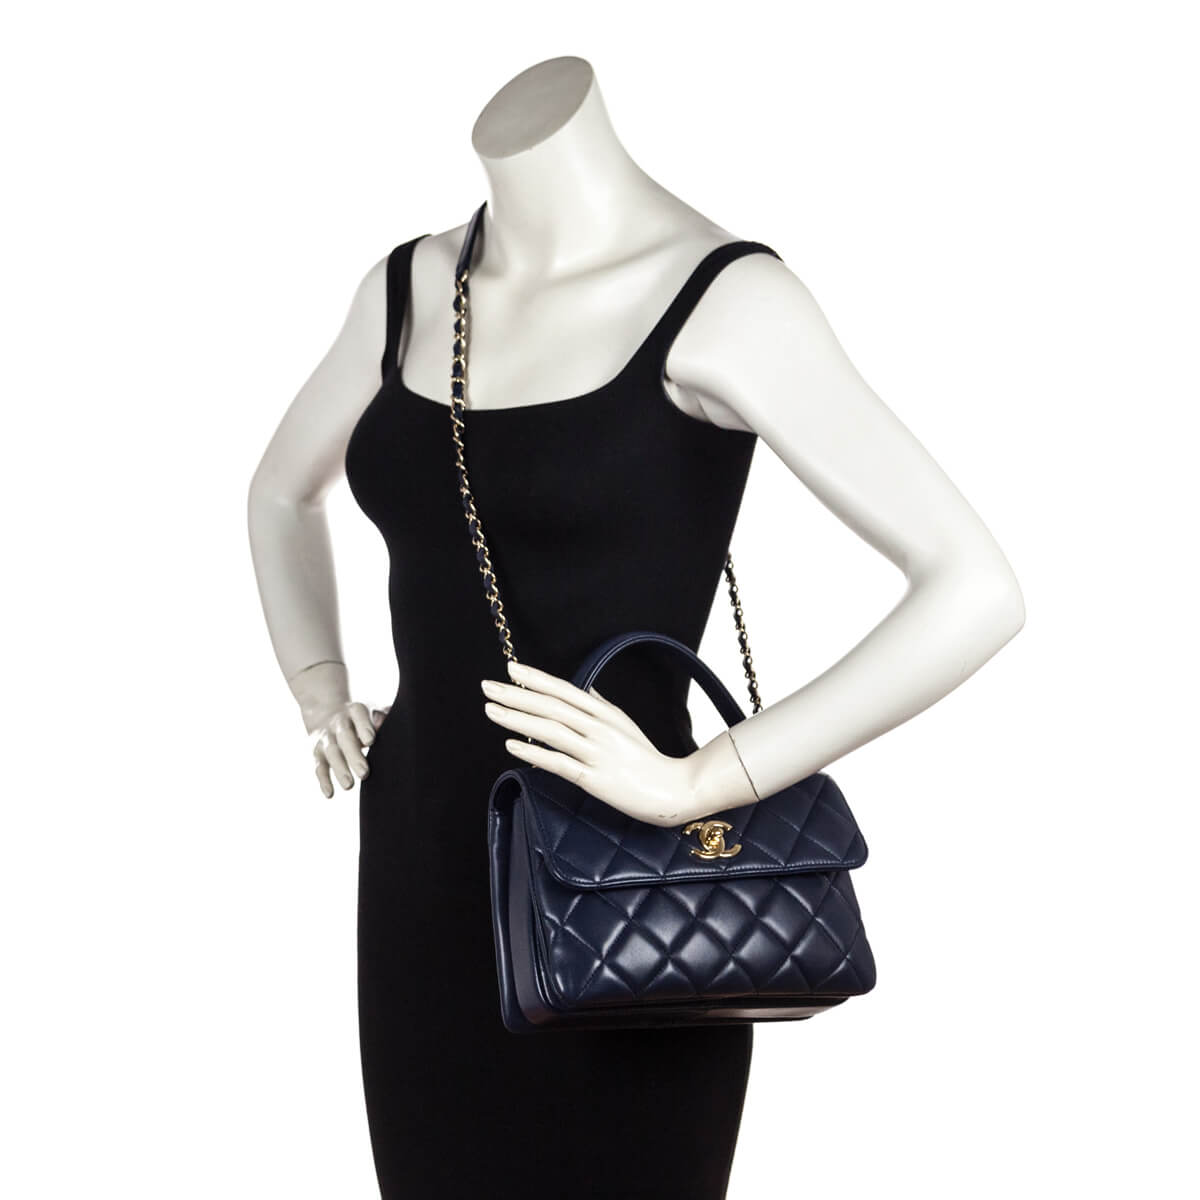 Chanel Large Trendy CC Handle Flap Bag in Navy Blue Lambskin | Dearluxe